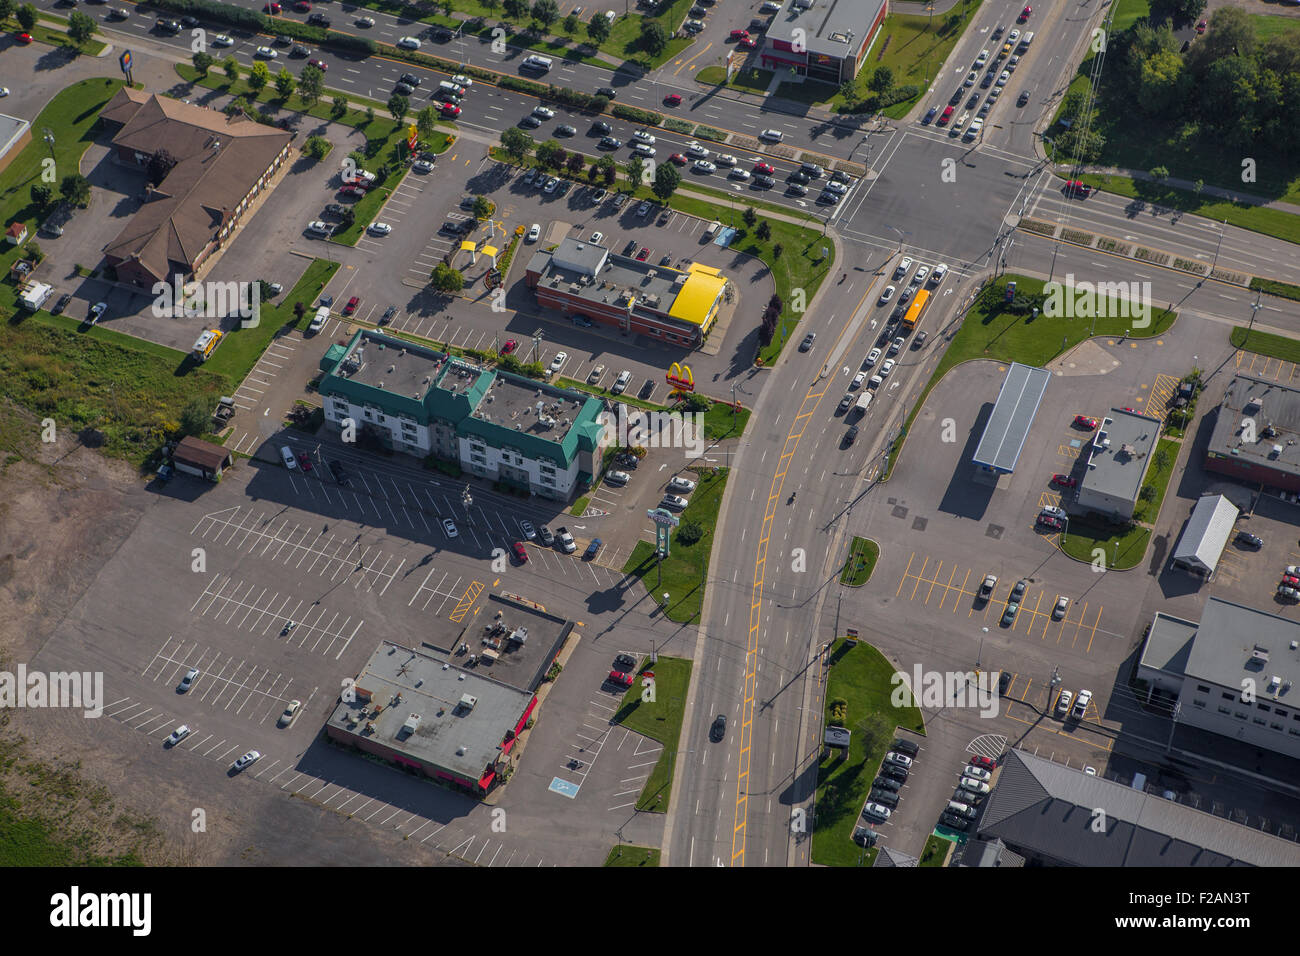 La sortie du boulevard Hamel et Route de l'aéroport rue est représentée dans cette vue aérienne de la ville de Québec Banque D'Images